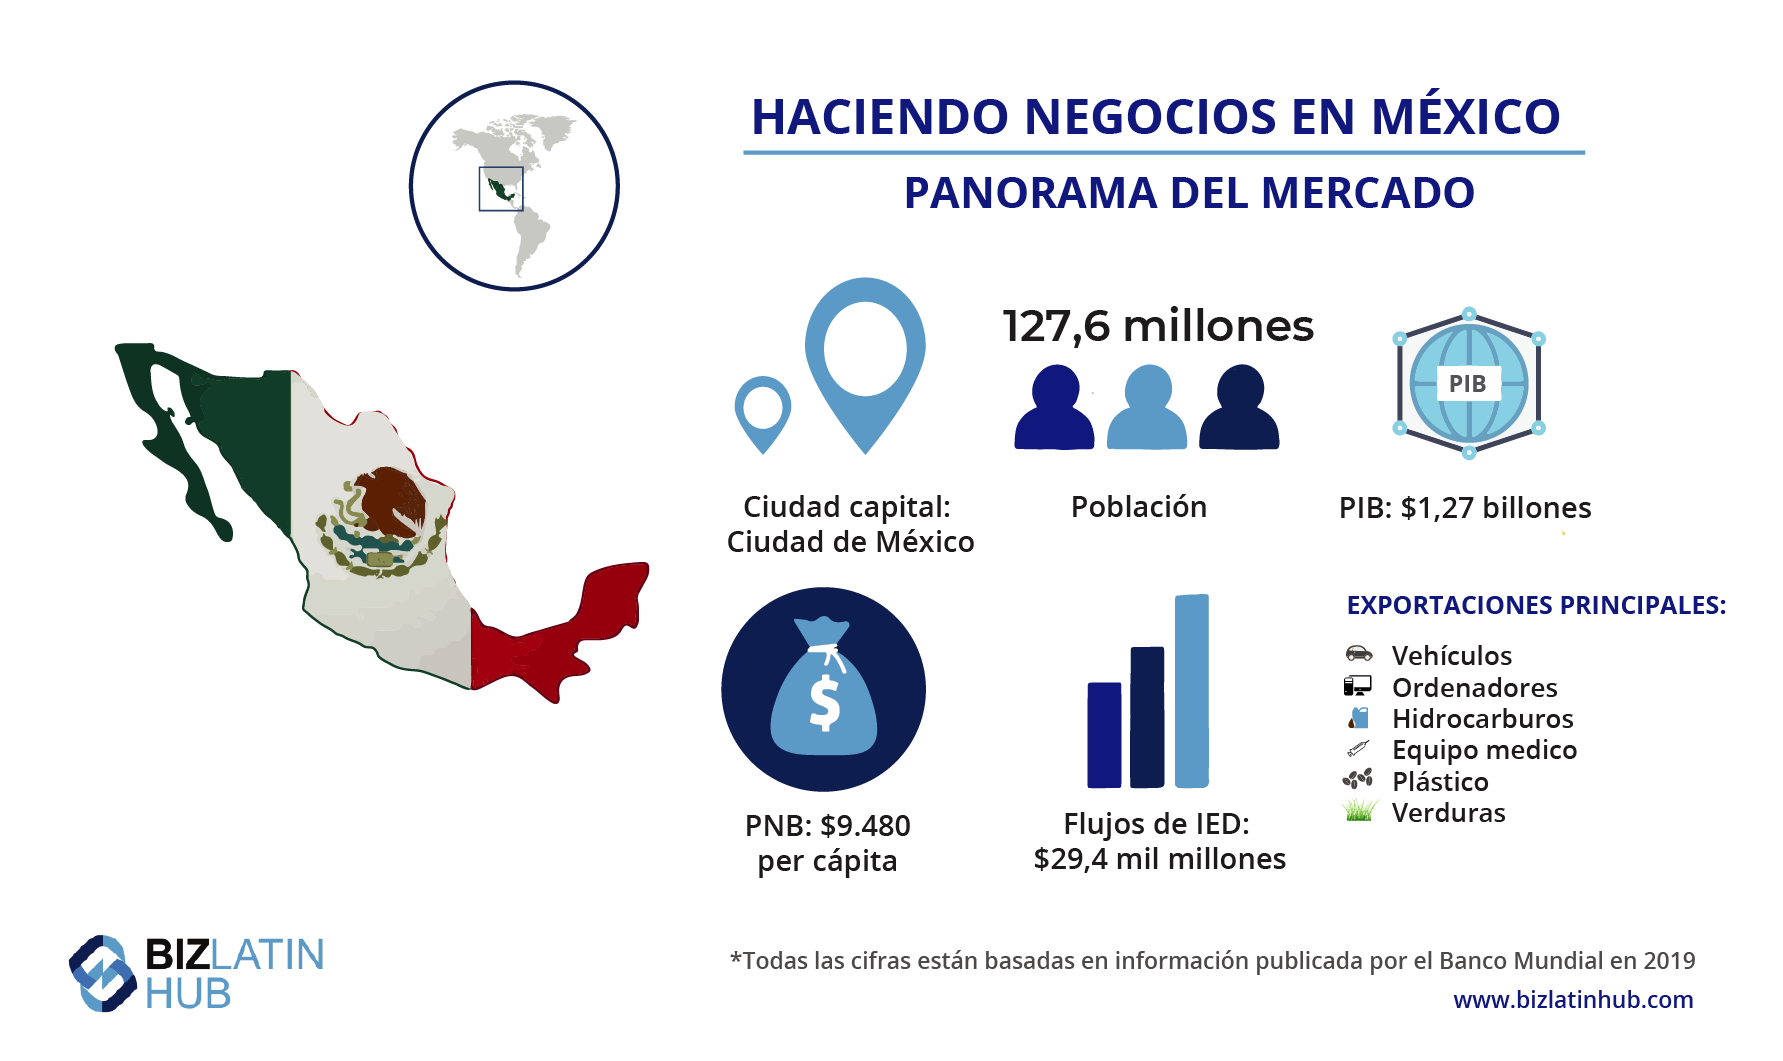 Panorama del mercado de México, información importante para cualquiera pensando en llevar a cabo una reestructuración corporativa en México 